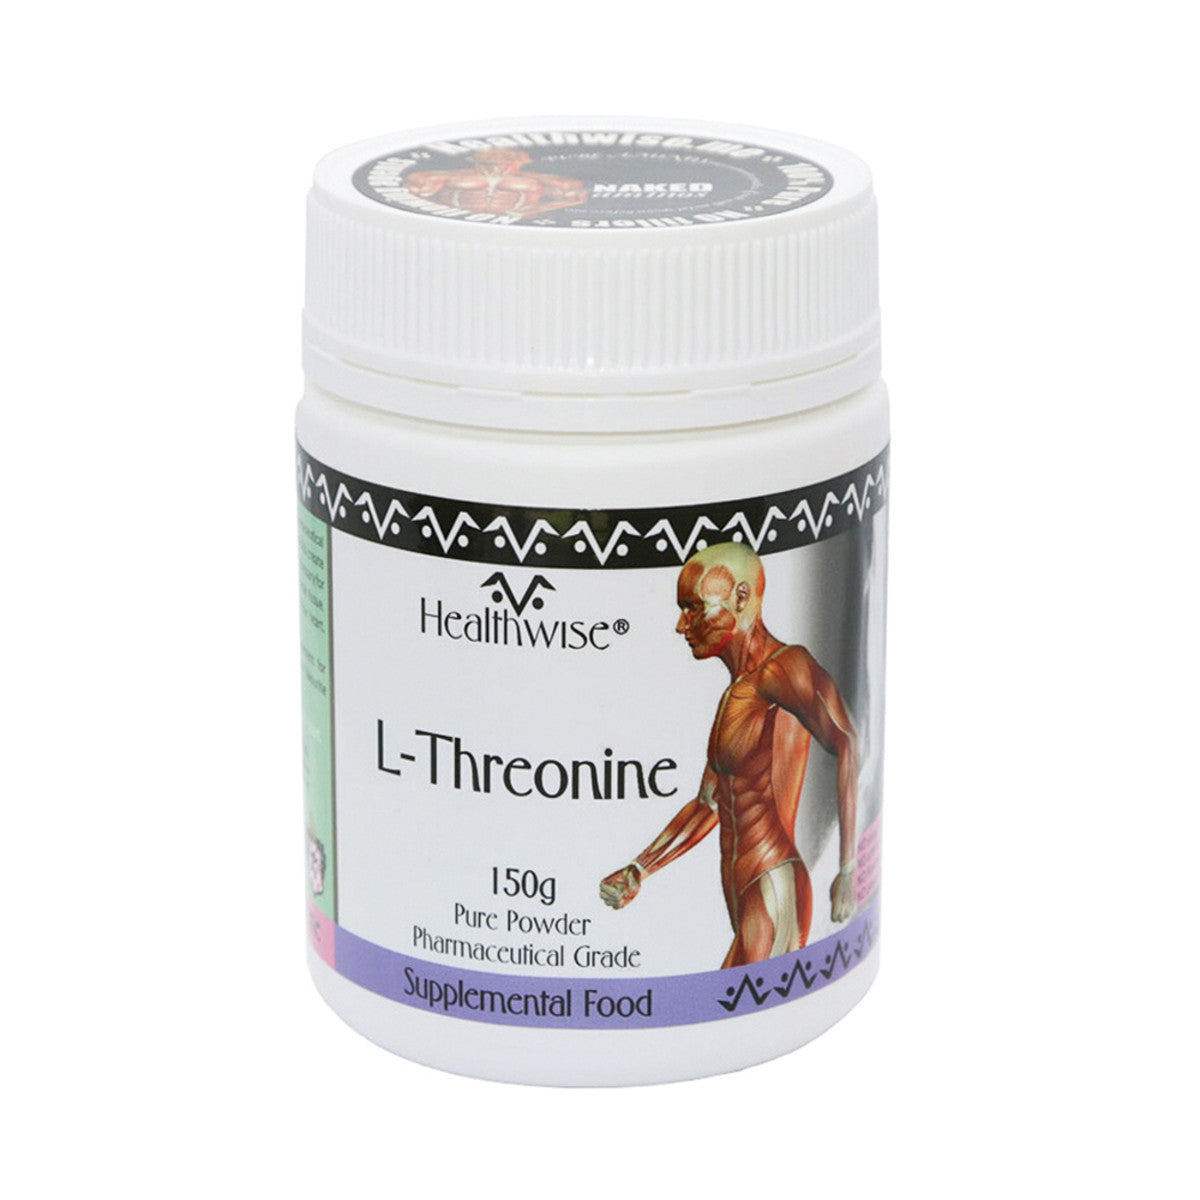 HealthWise - L-Threonine